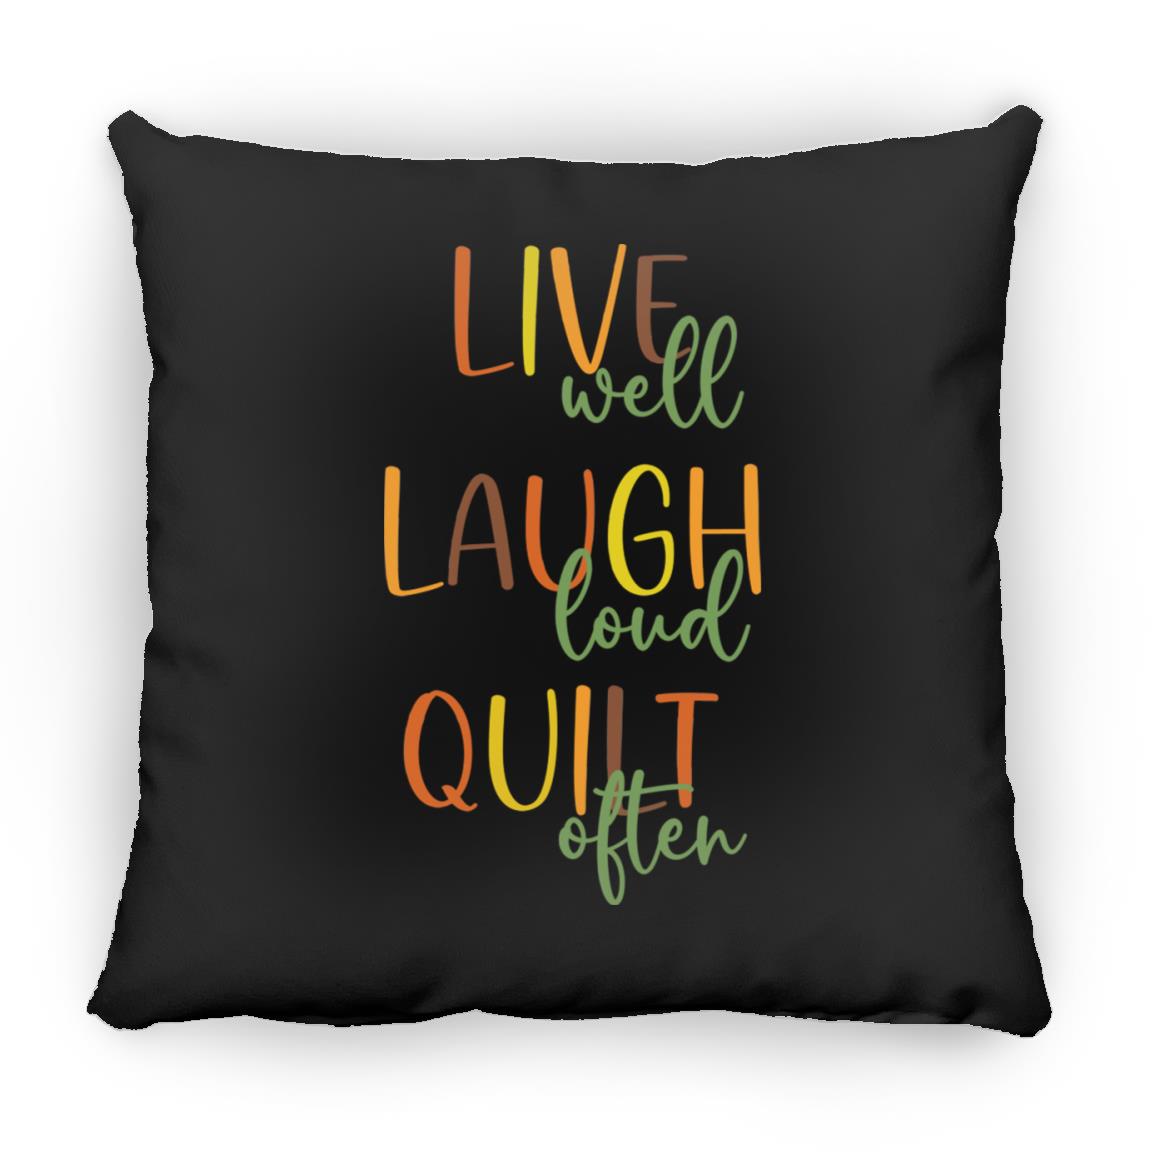 Live Well Quilt Often Pillows